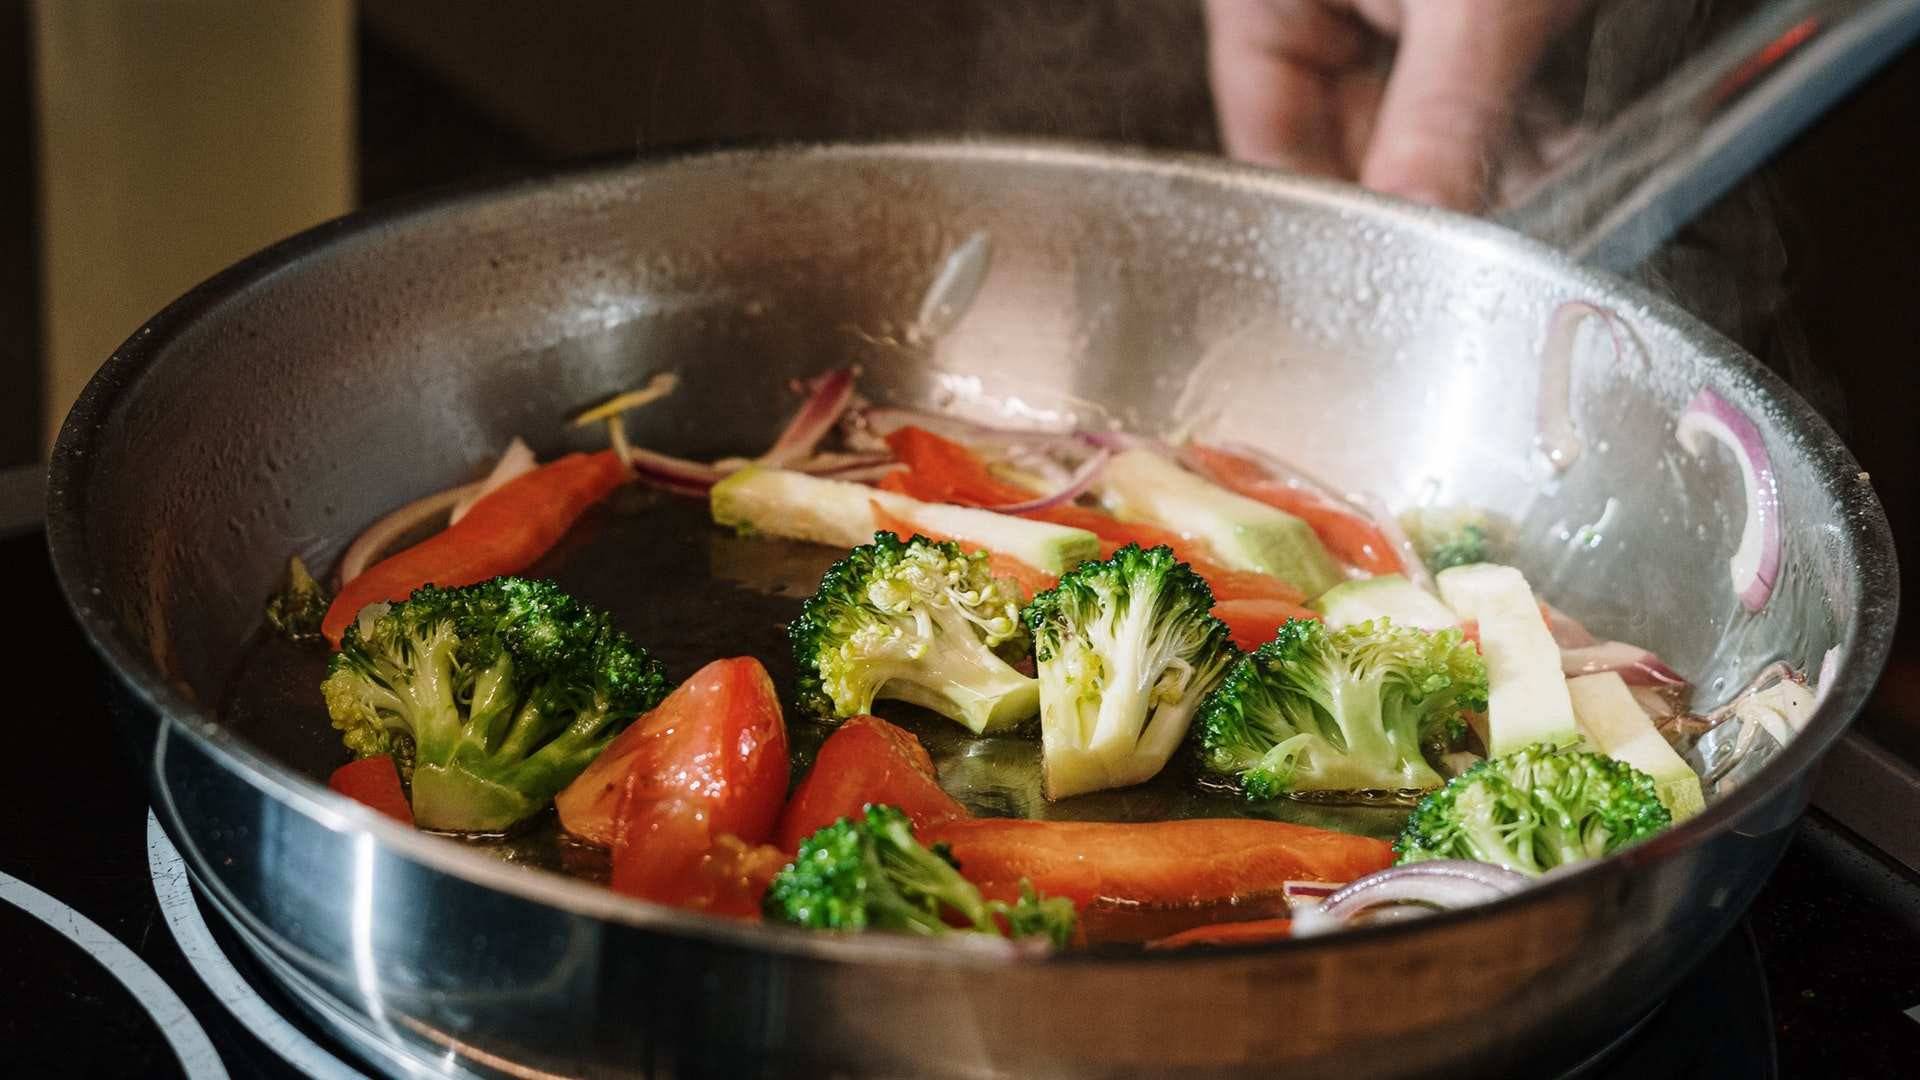 Las mejores técnicas para cocinar es al vapor, en el horno o a la plancha pero si prefieres freír utiliza aceites como el de oliva o girasol.